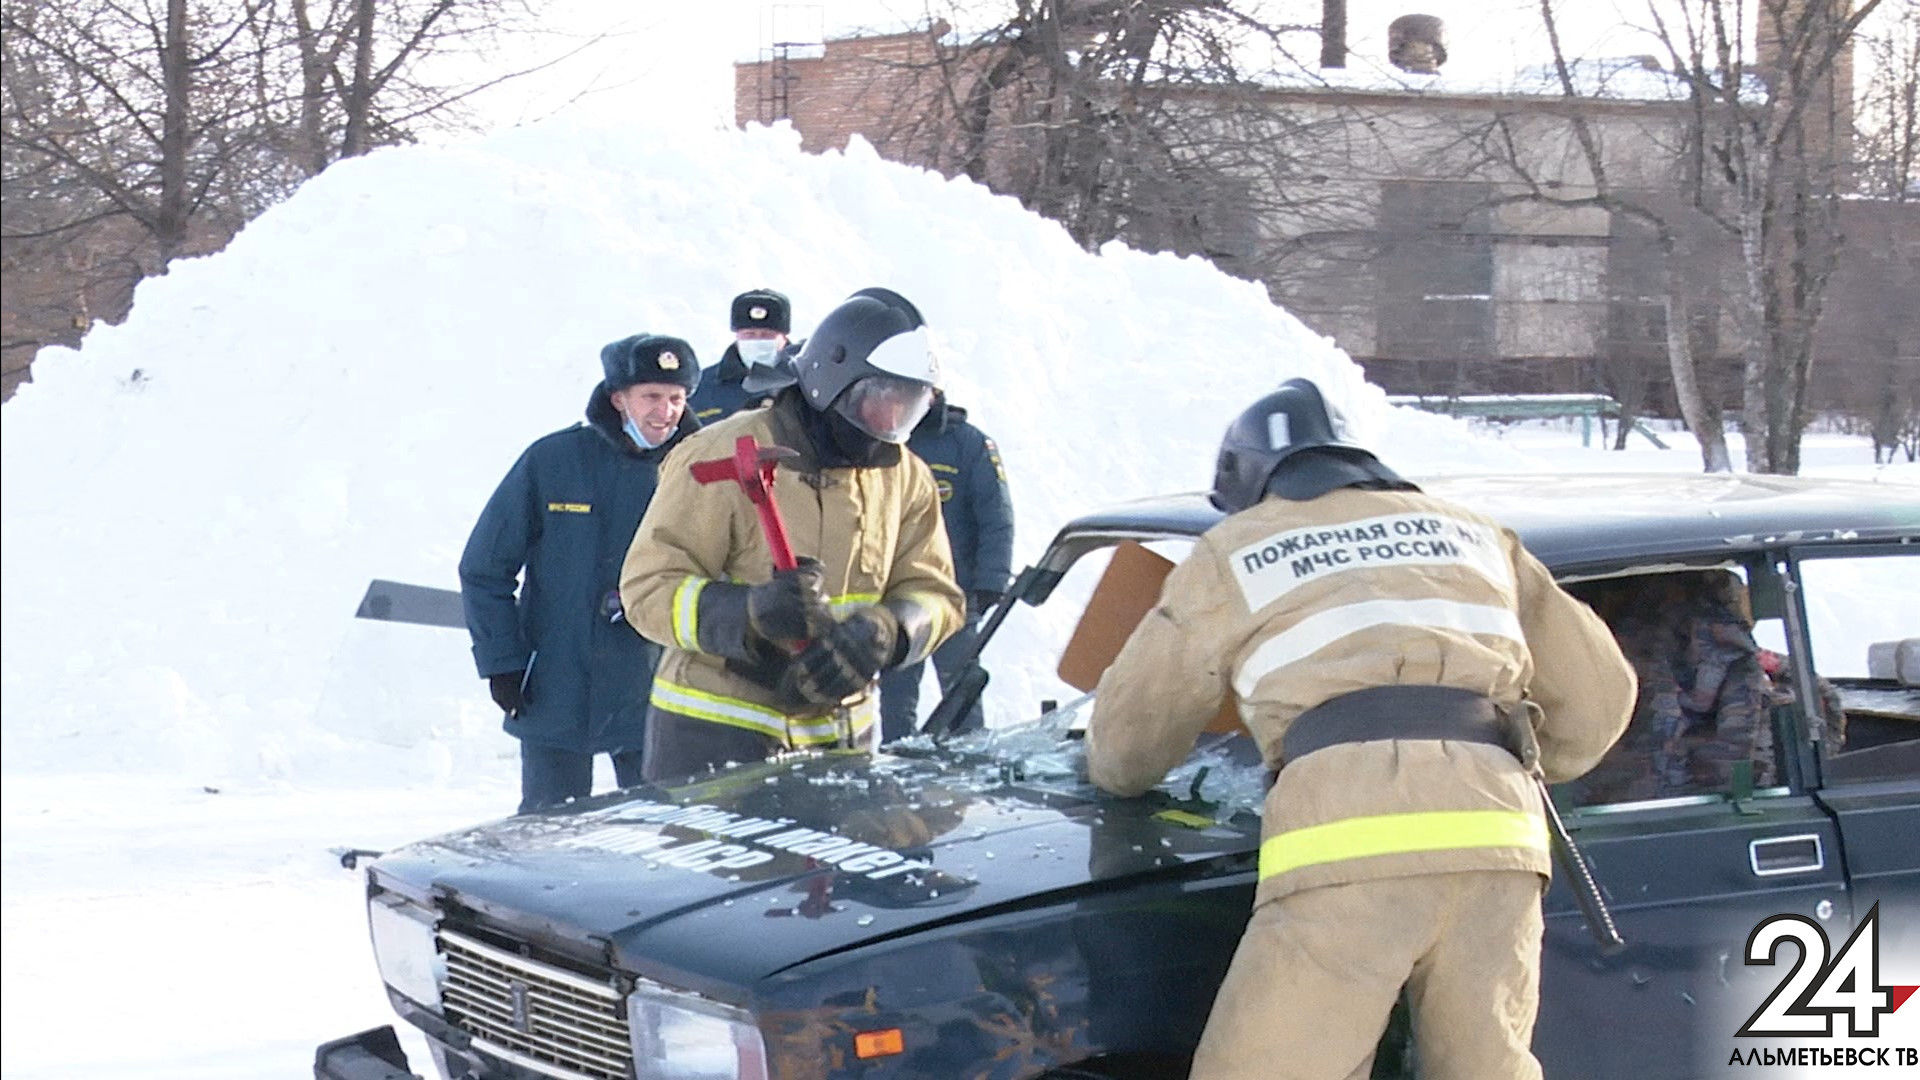 Спасатели в Альметьевском районе извлекали пострадавшего из заблокированного авто на учениях